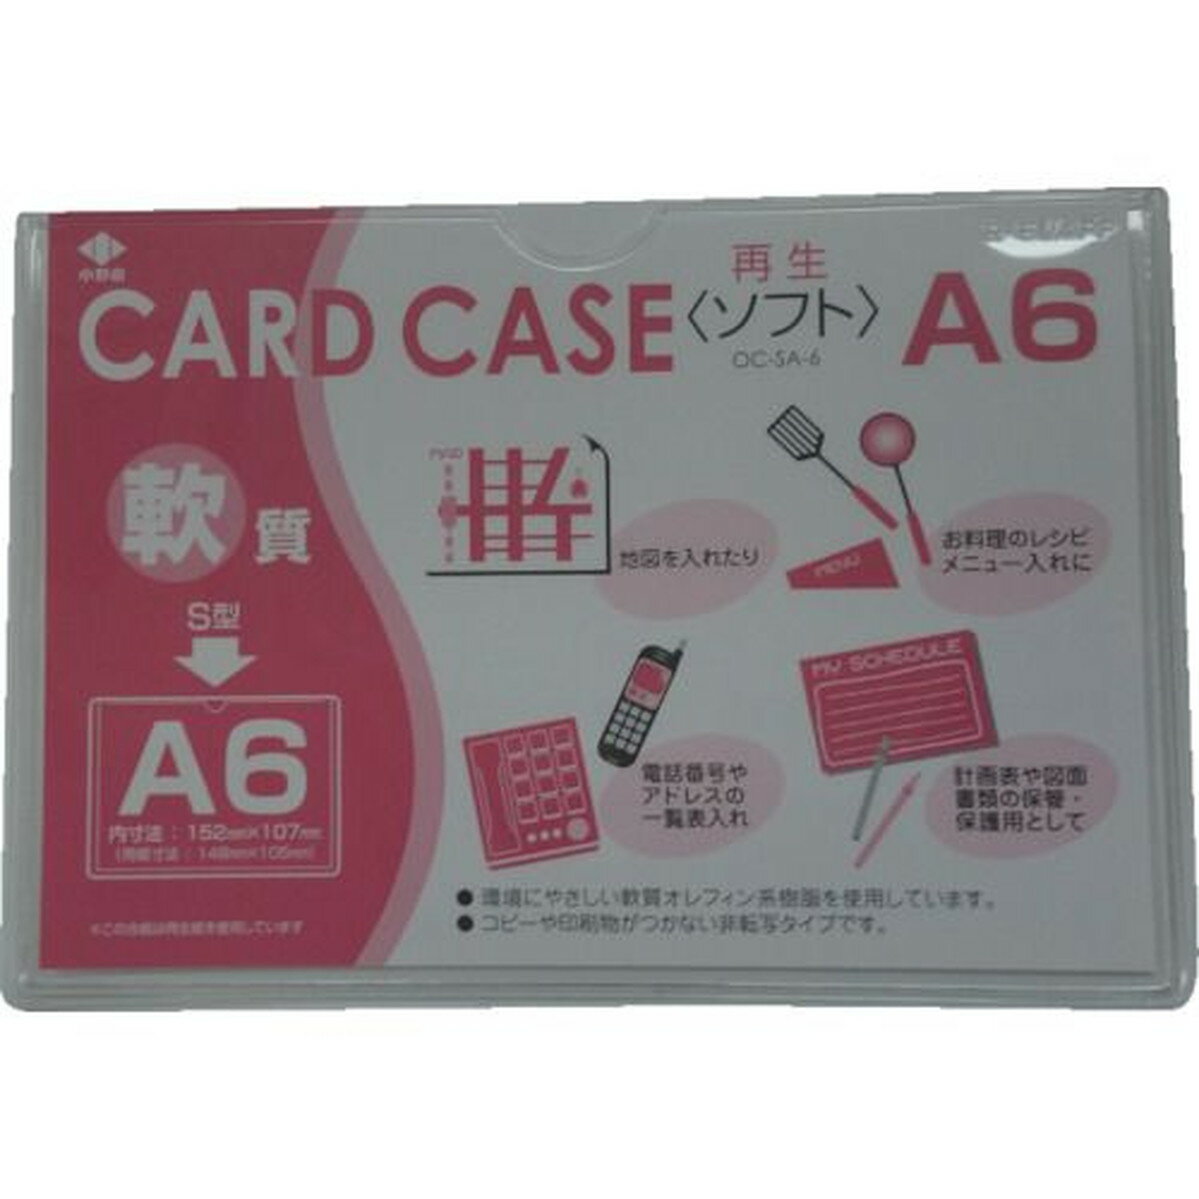 小野由 軟質カードケース（A6） 1枚 (OC-SA-6)